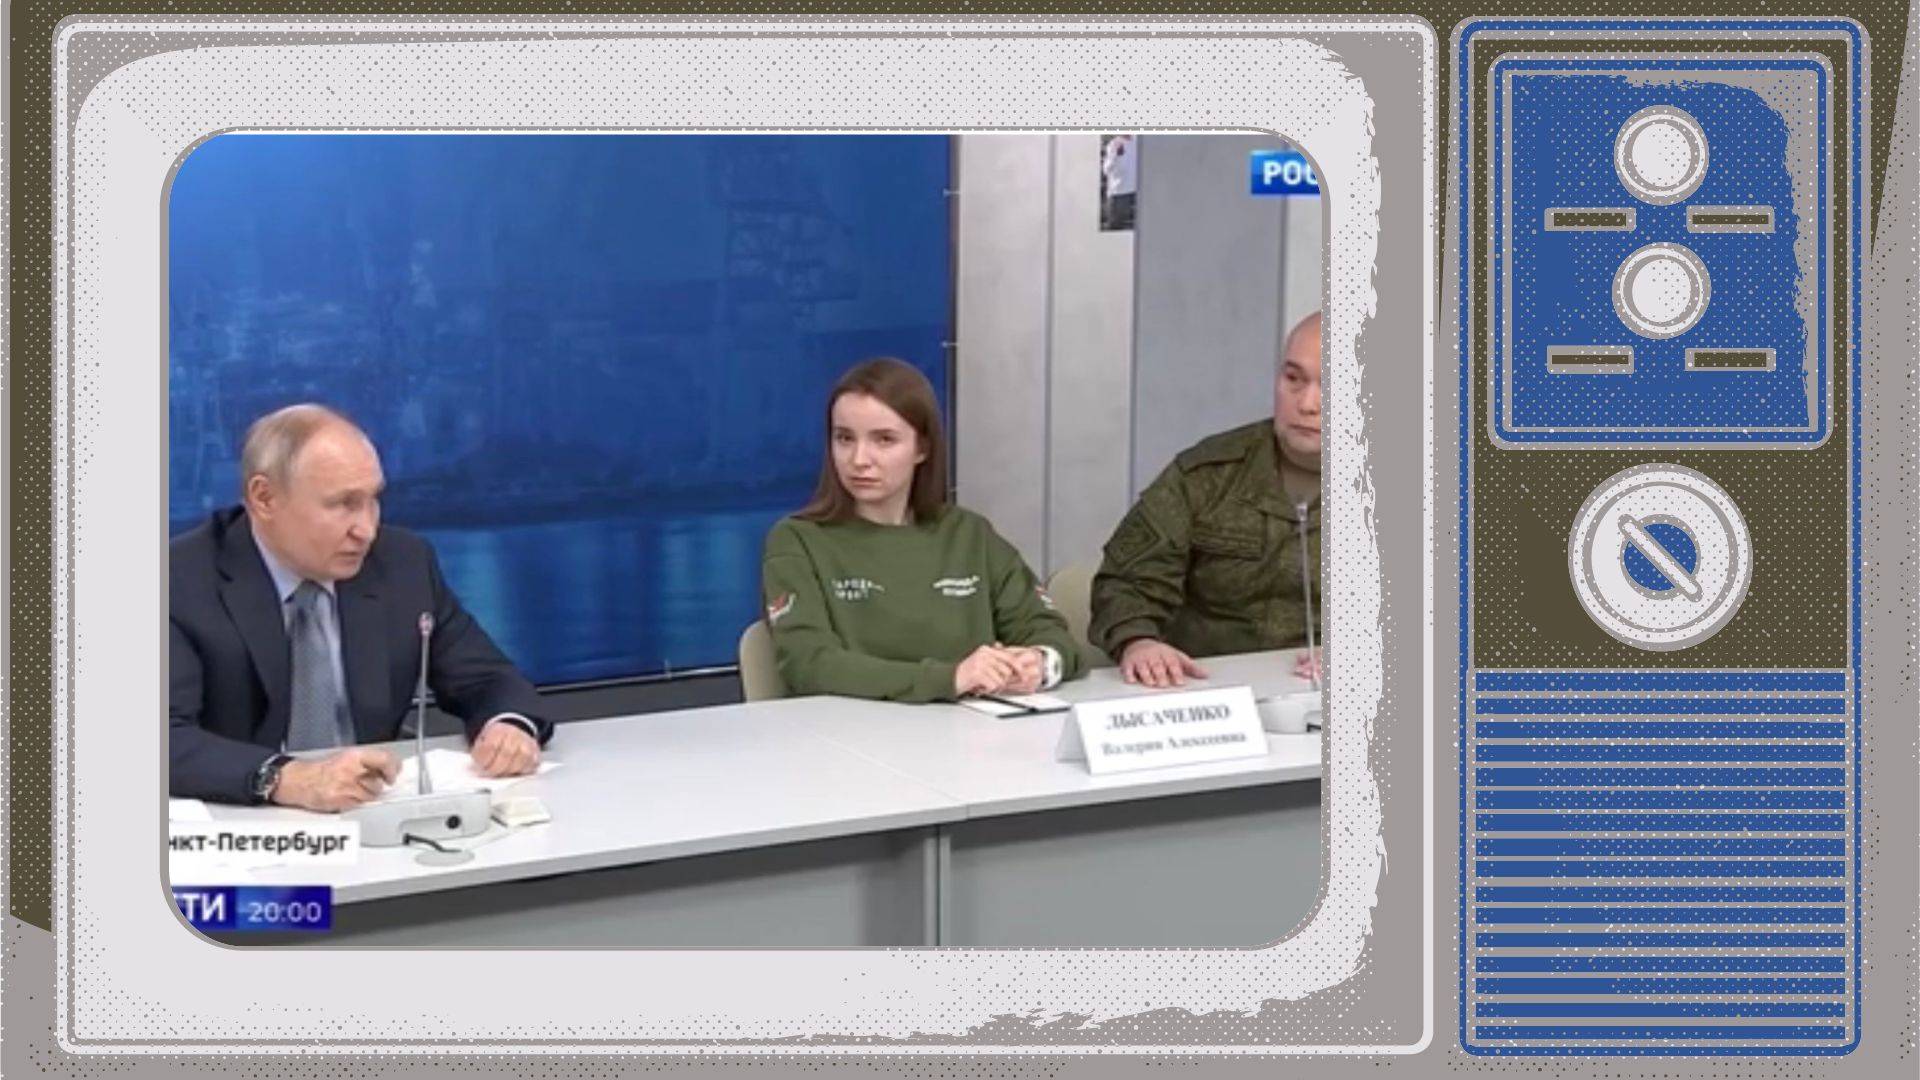 Grafika. W ramce starego telewizora zdjęcie Putina siedzącego przy stole z młodymi ludźmi w mundurach